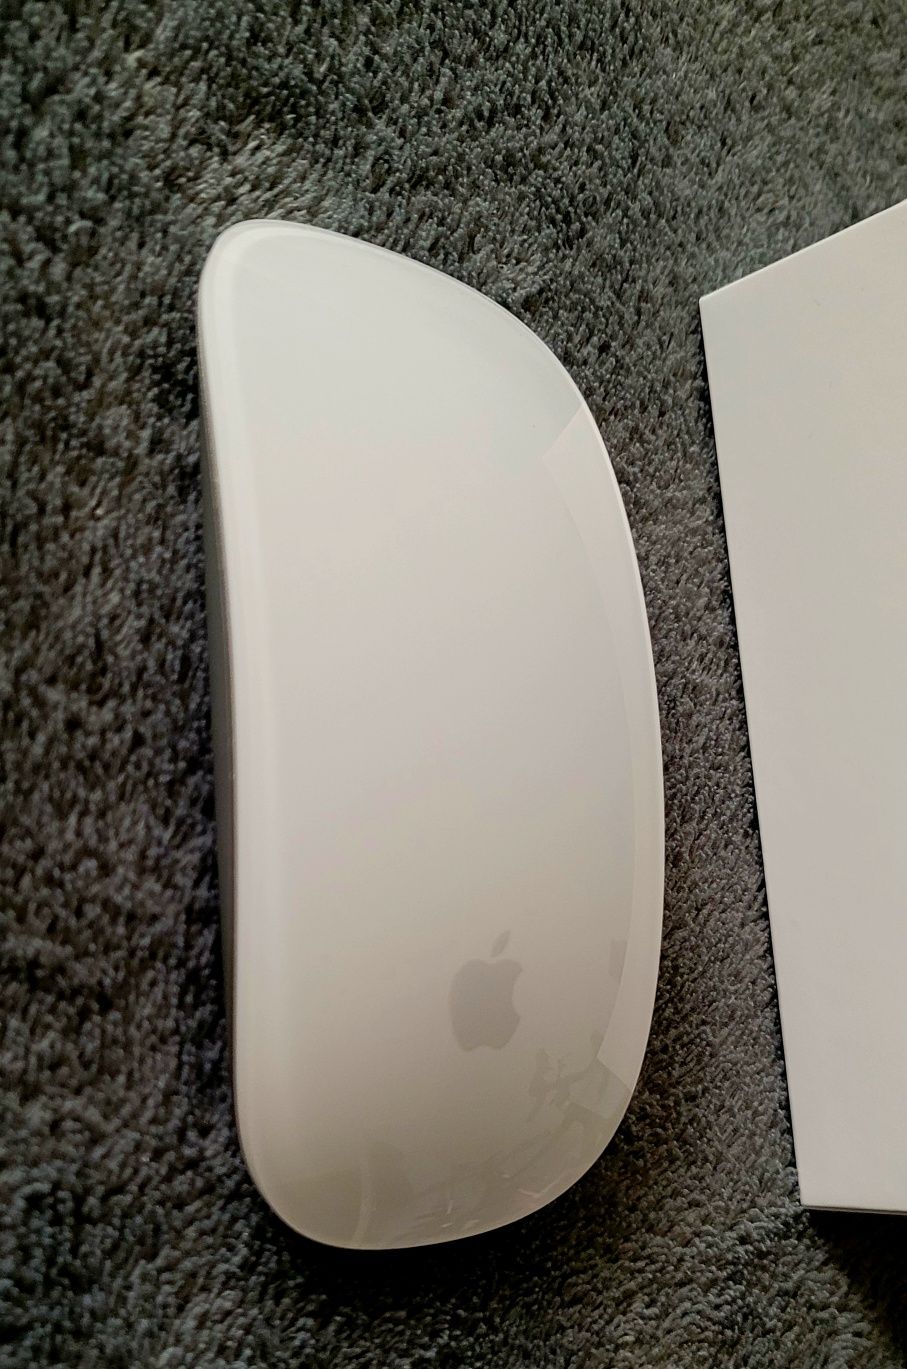 Apple Magic Mouse A1657  jak nowa stan idealny używana 10 minut.